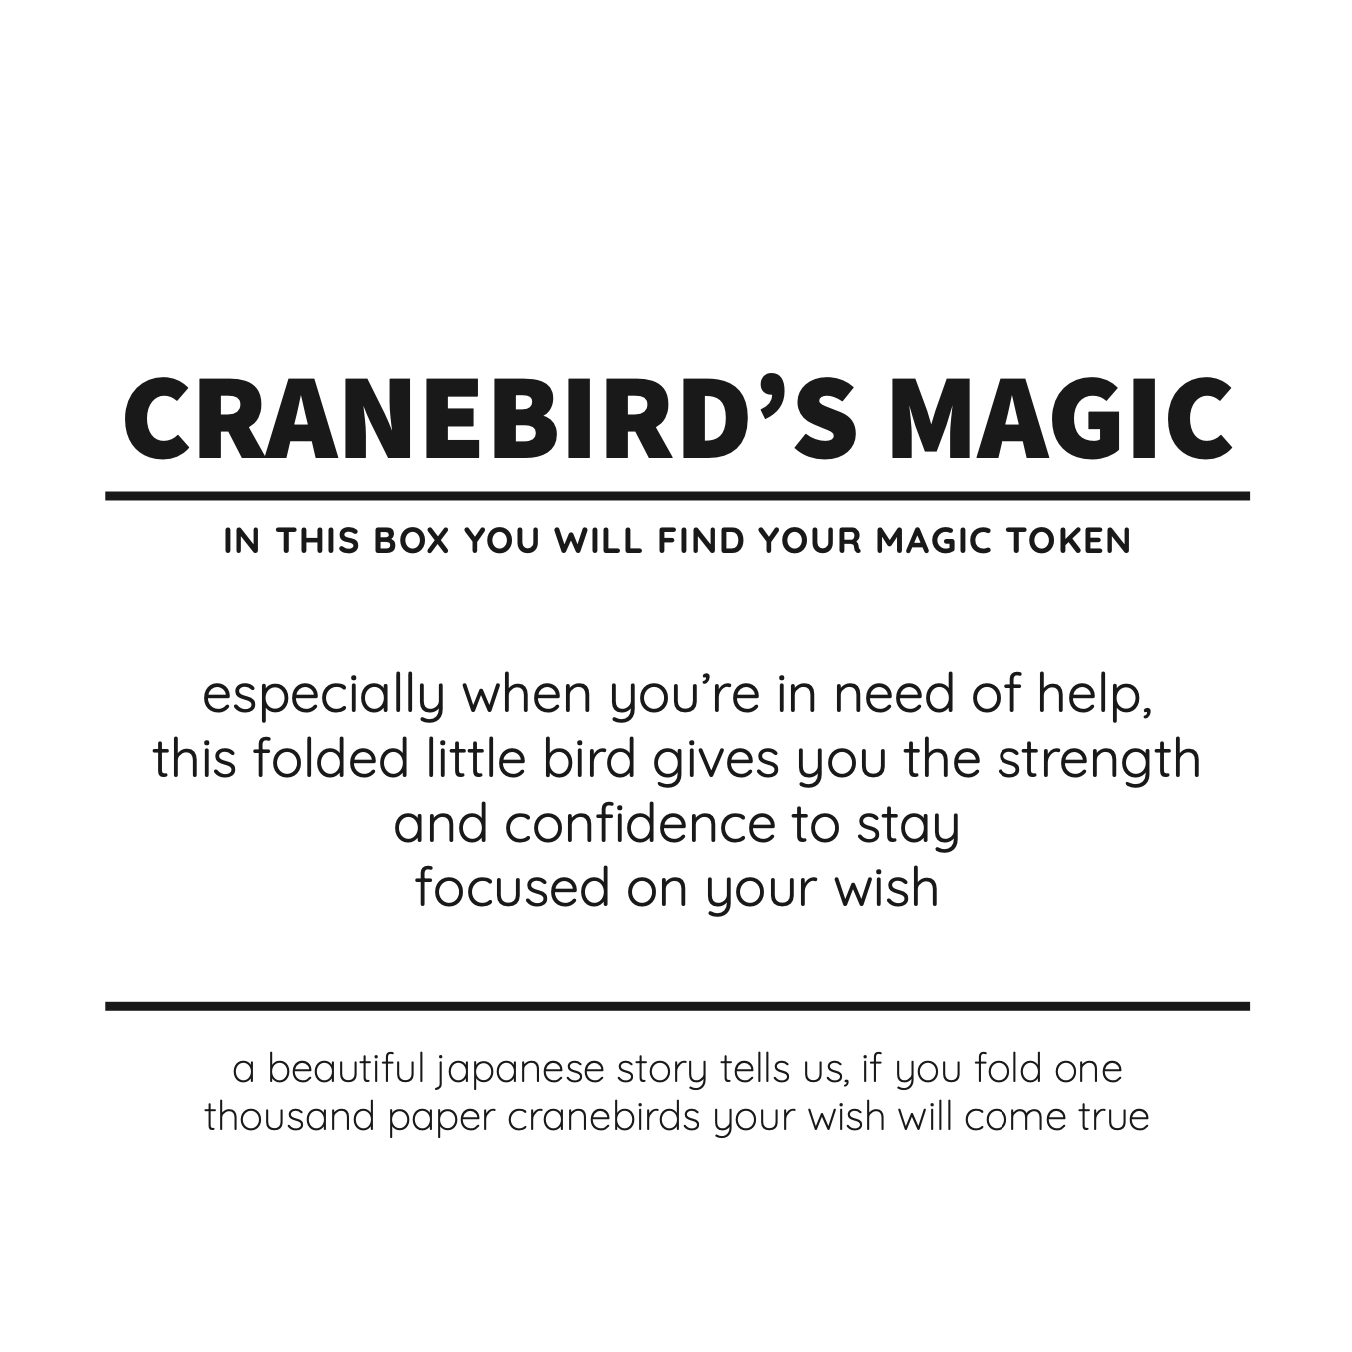 Cranebird's Magic